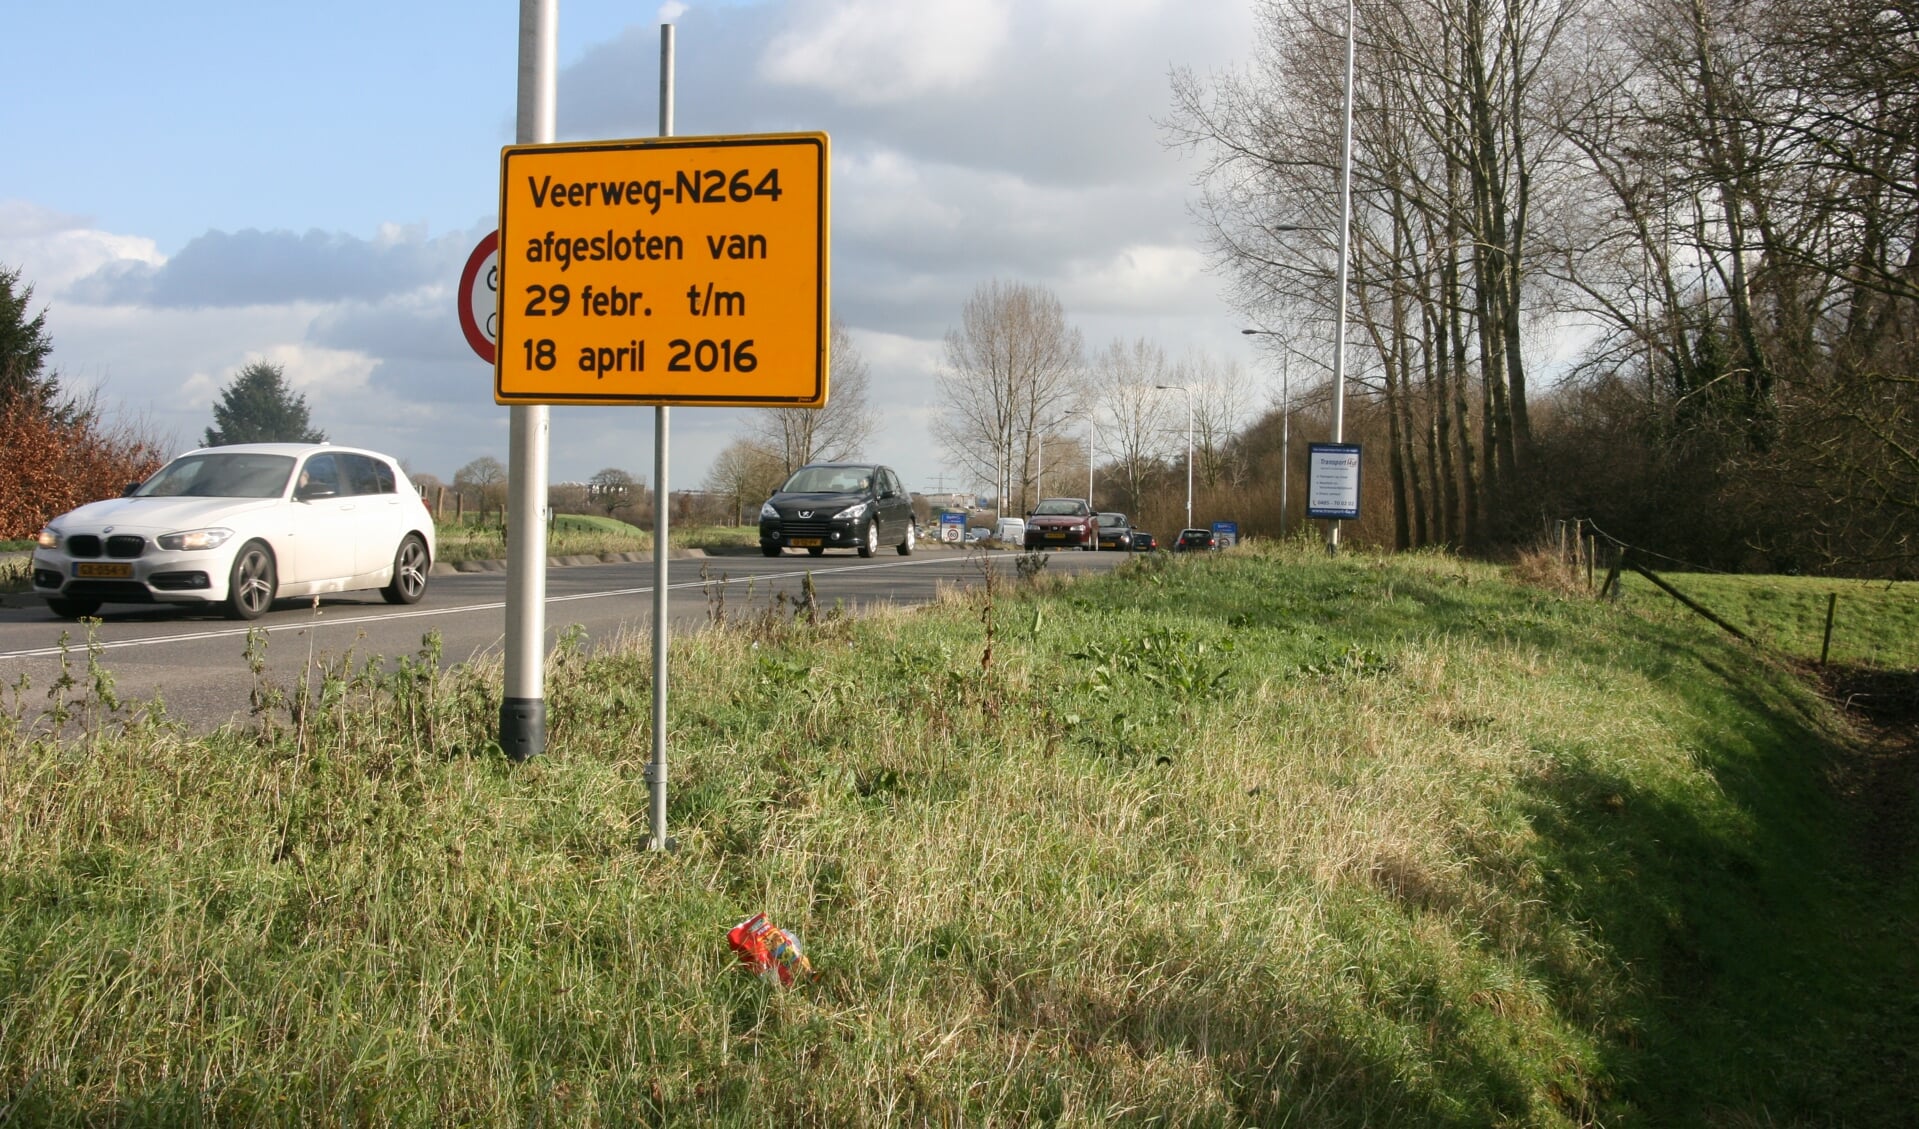 De N264 gaat wekenlang dicht wegens wegwerkzaamheden. (foto: De Maas Driehoek)